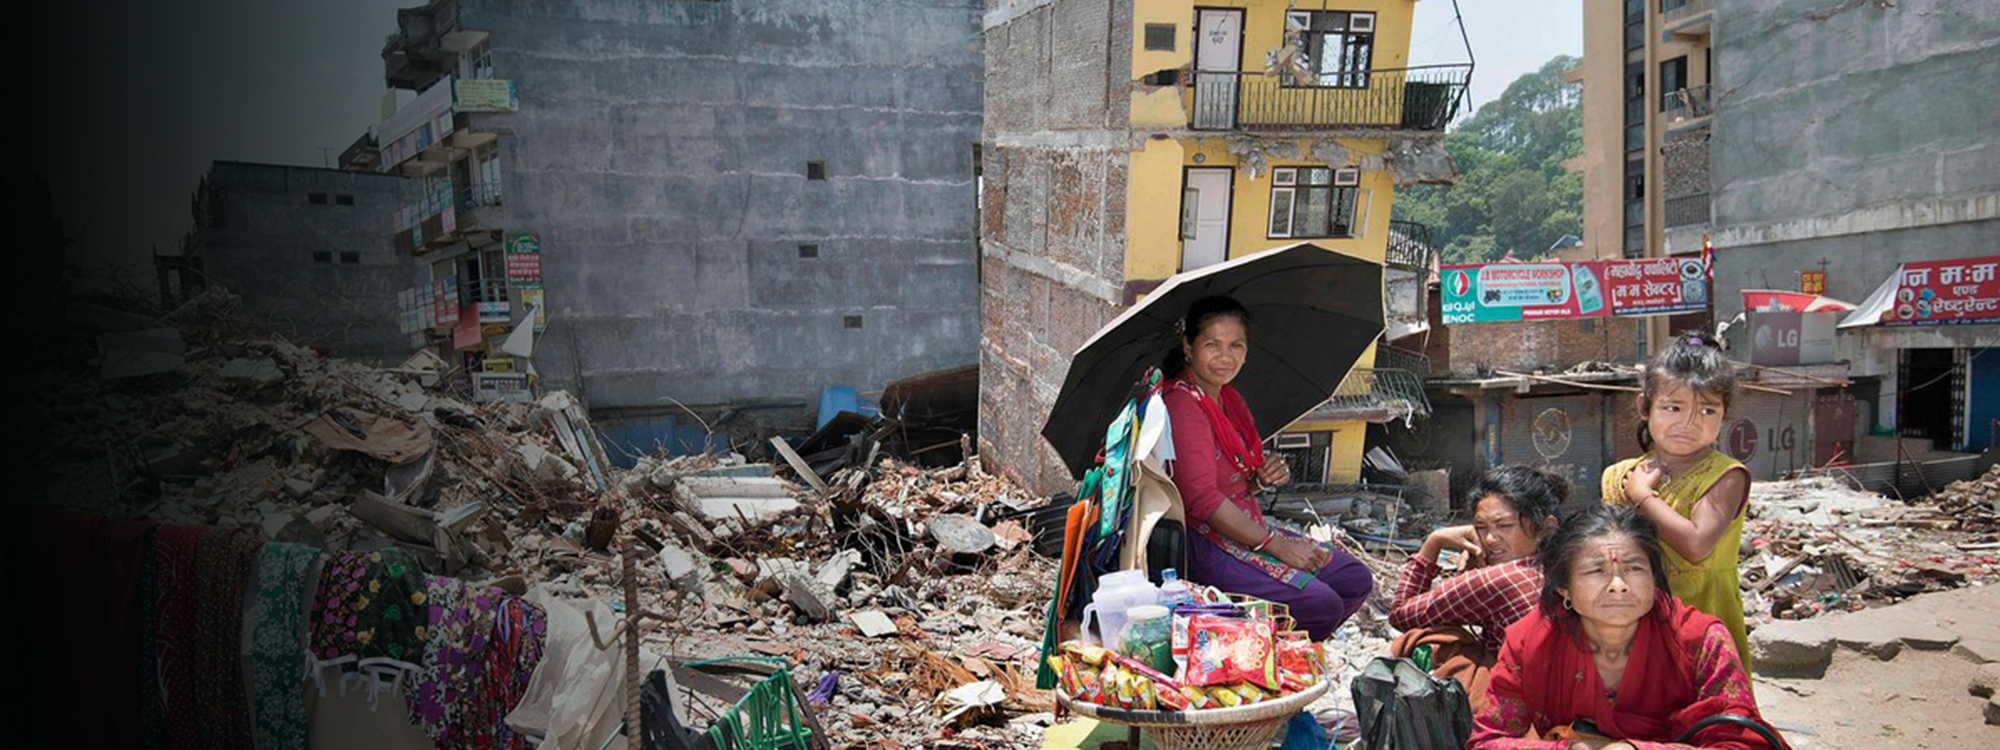 Destruction in Nepal